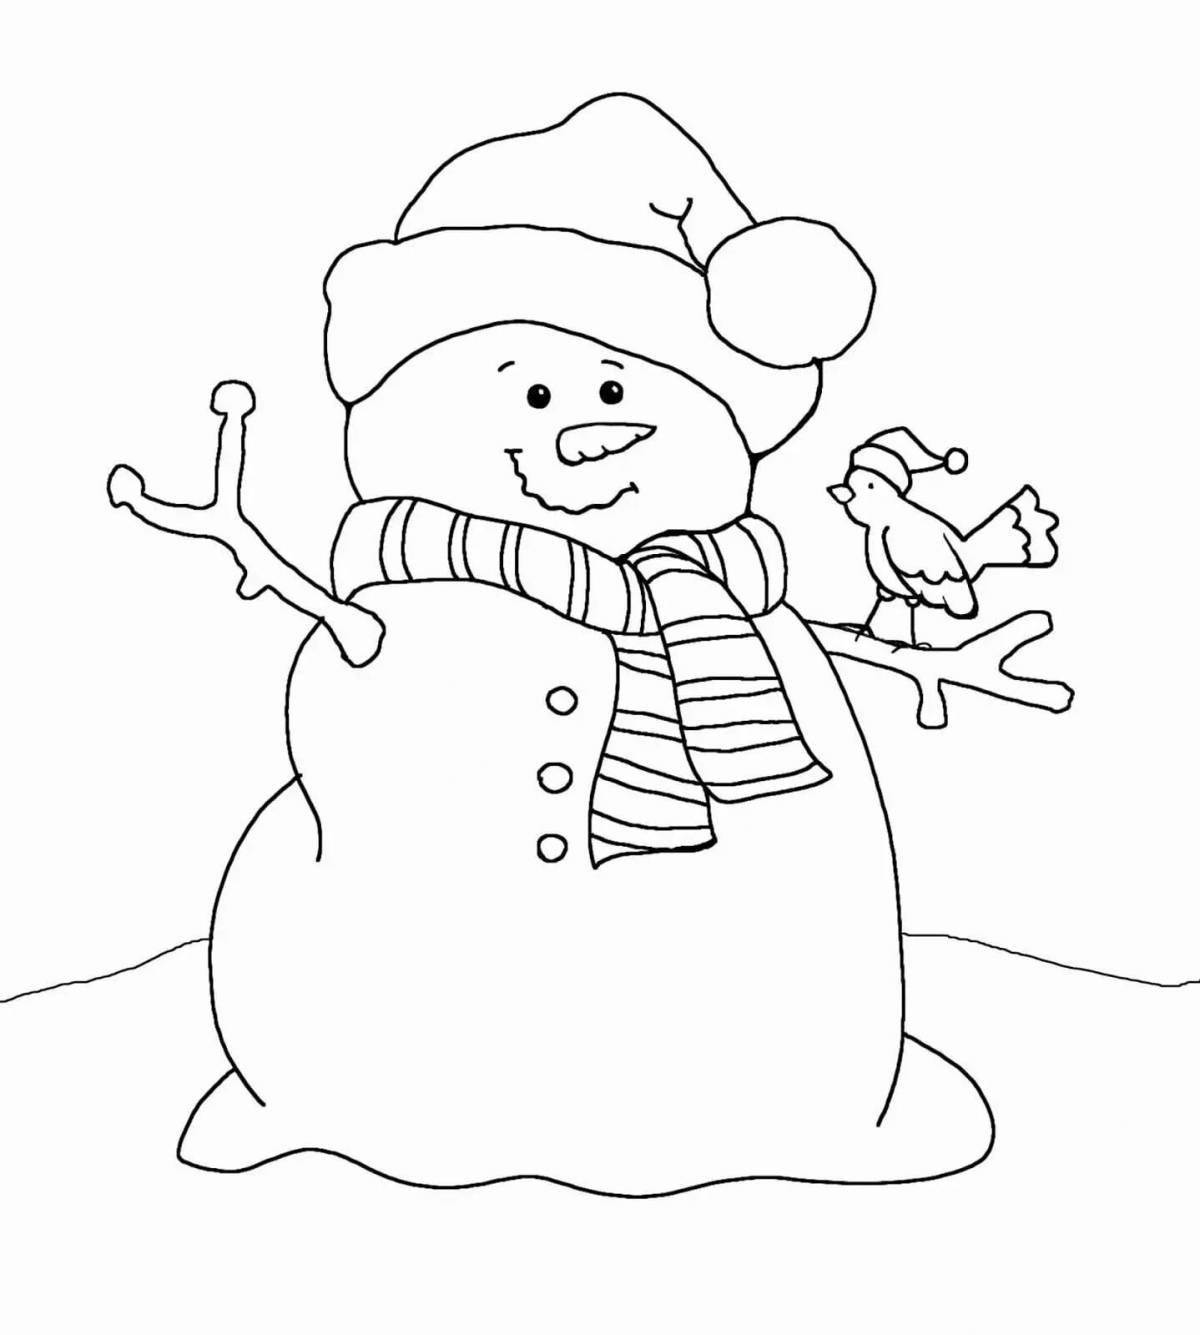 Очаровательная раскраска смешной снеговик для детей